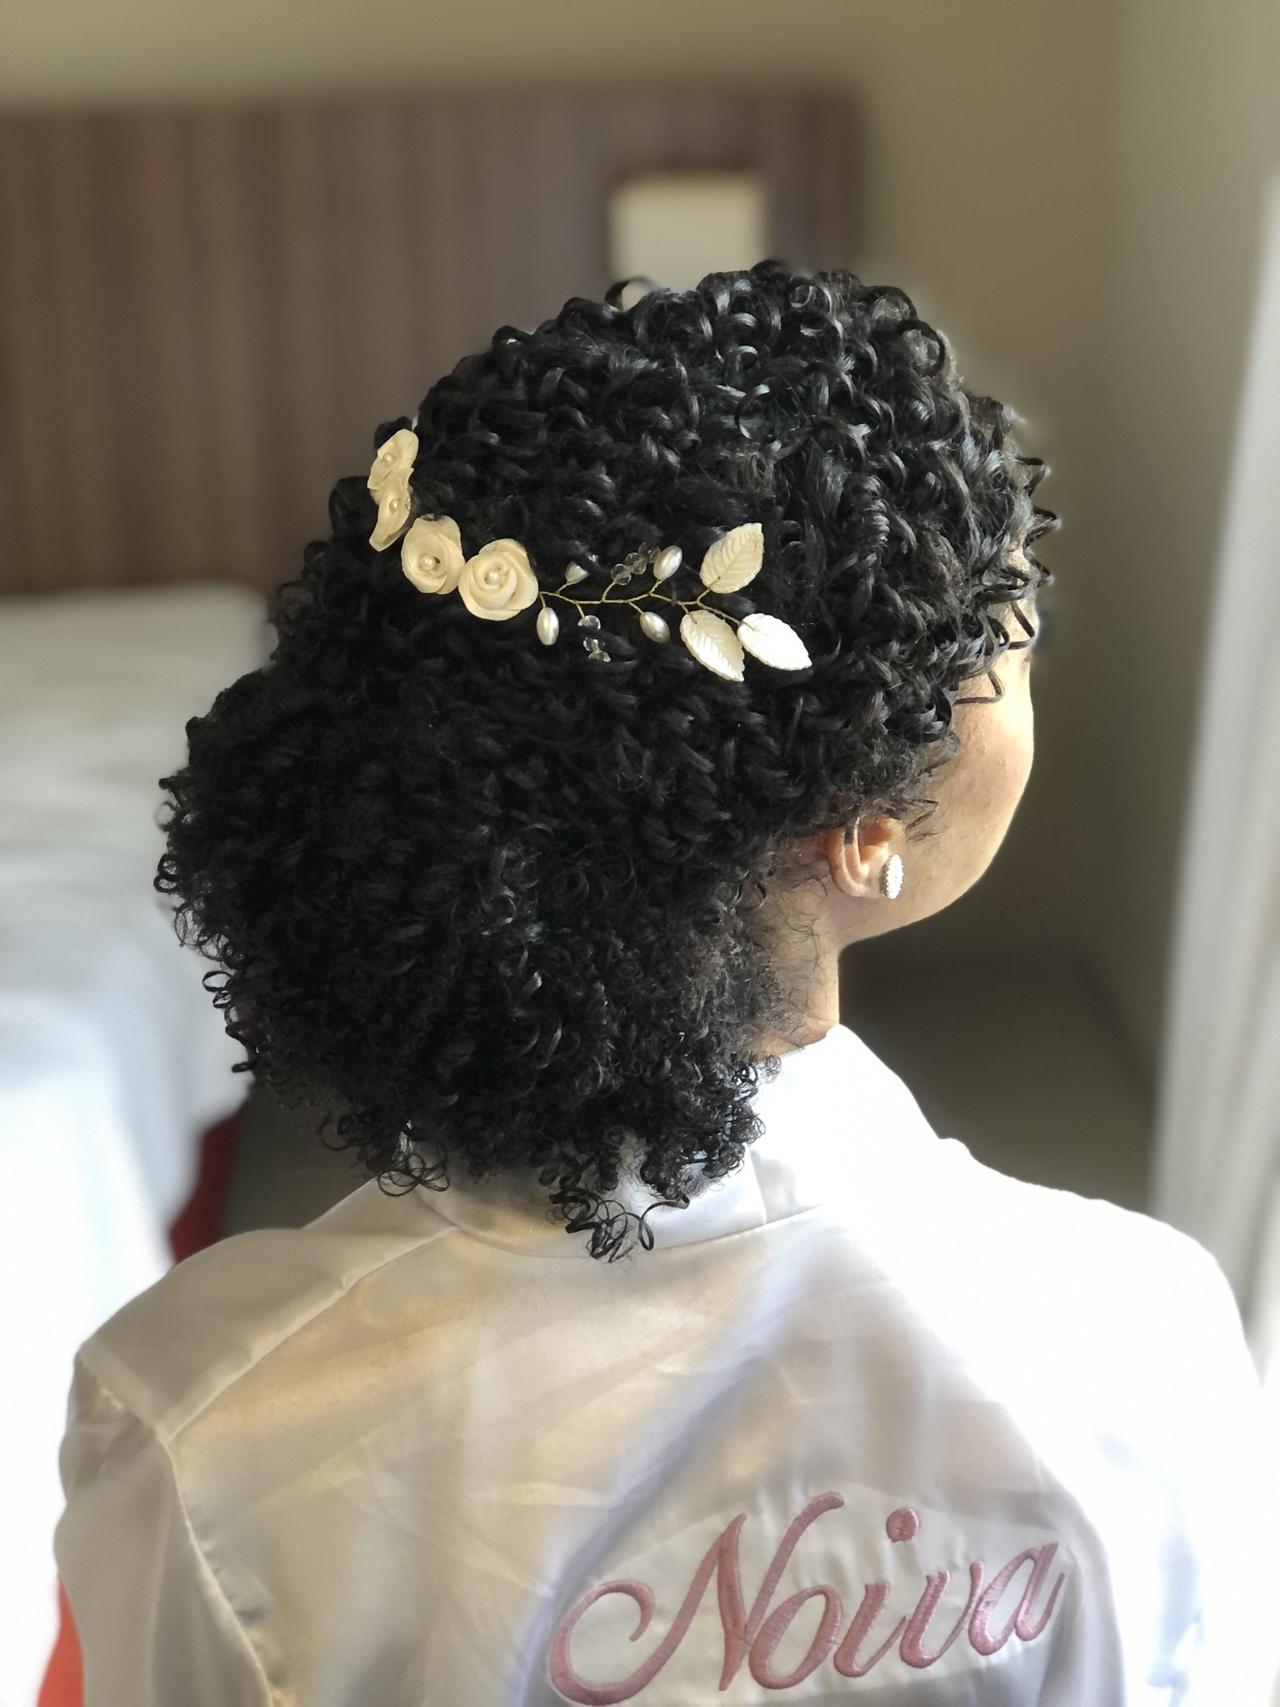 Penteados de casamento para cabelo crespo: 110 inspirações para as noivas!